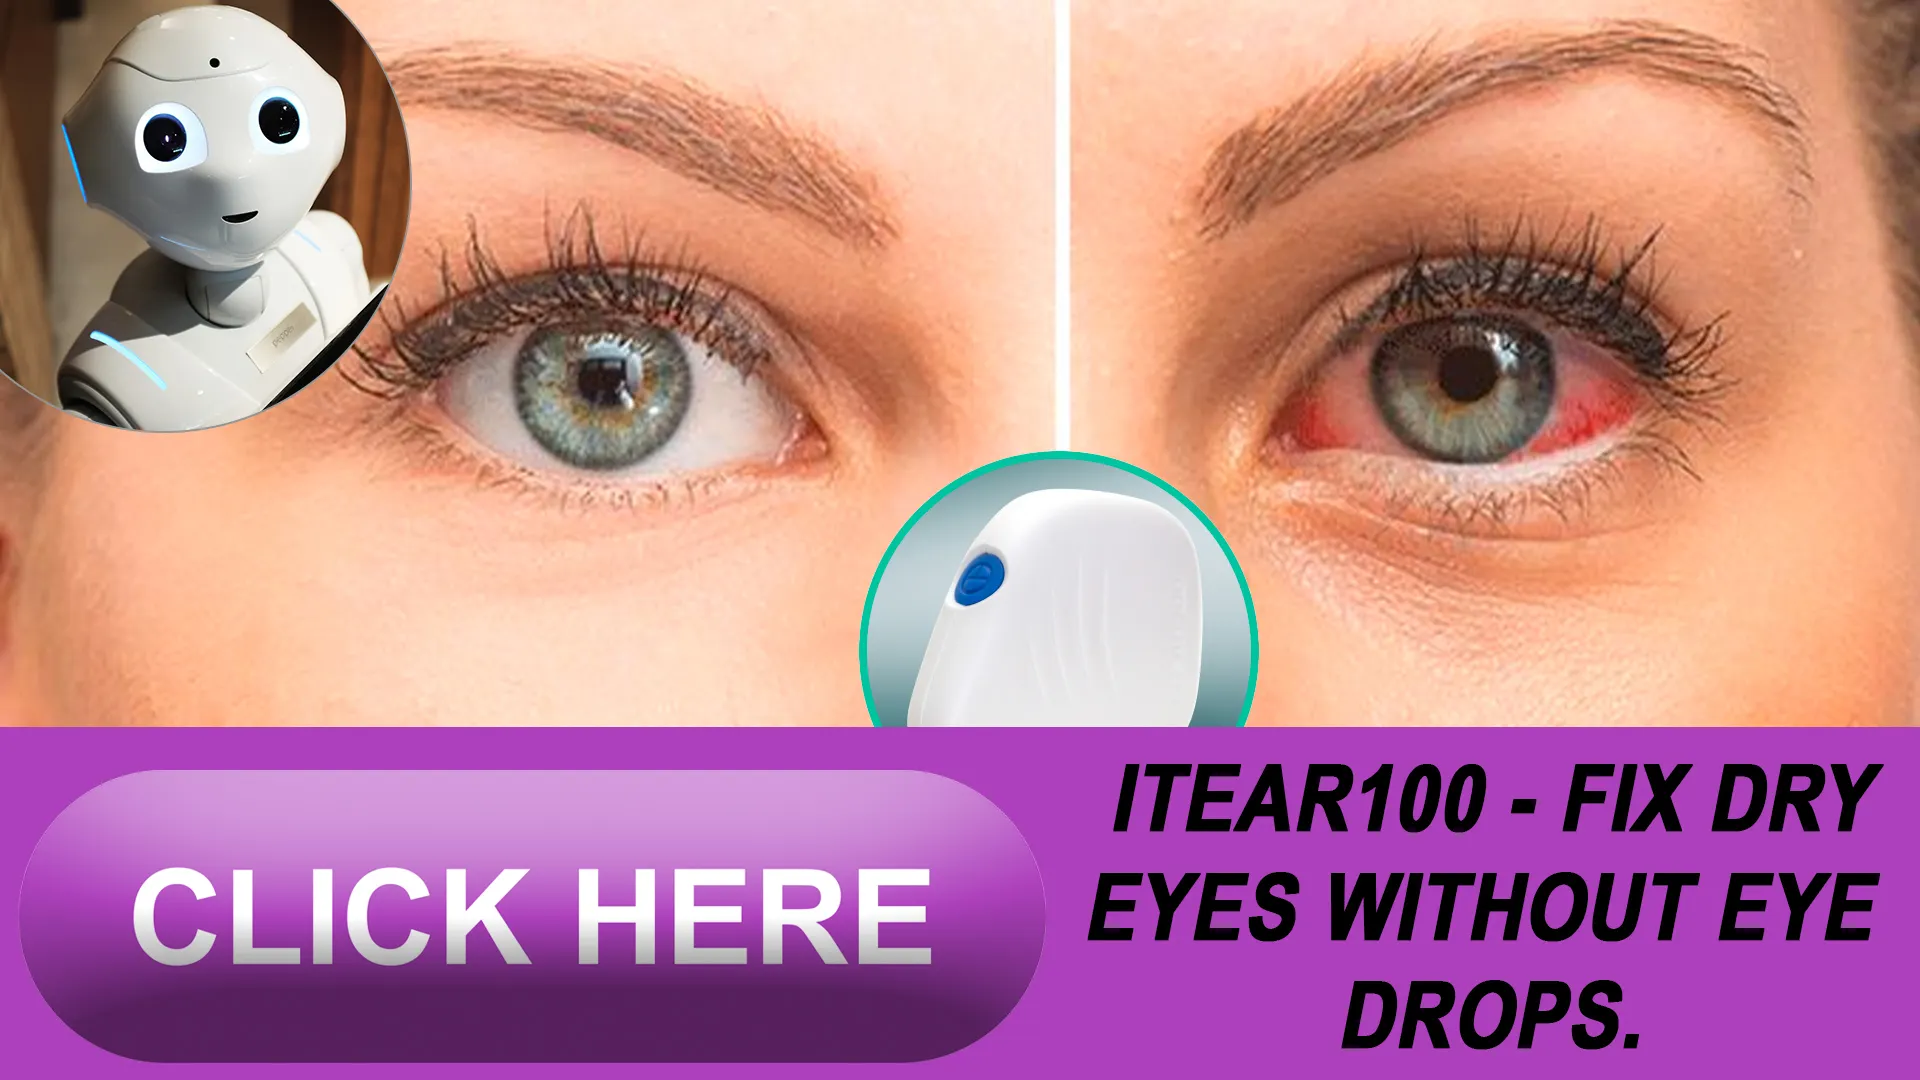 3. Spotting and Addressing Dry Eye Symptoms